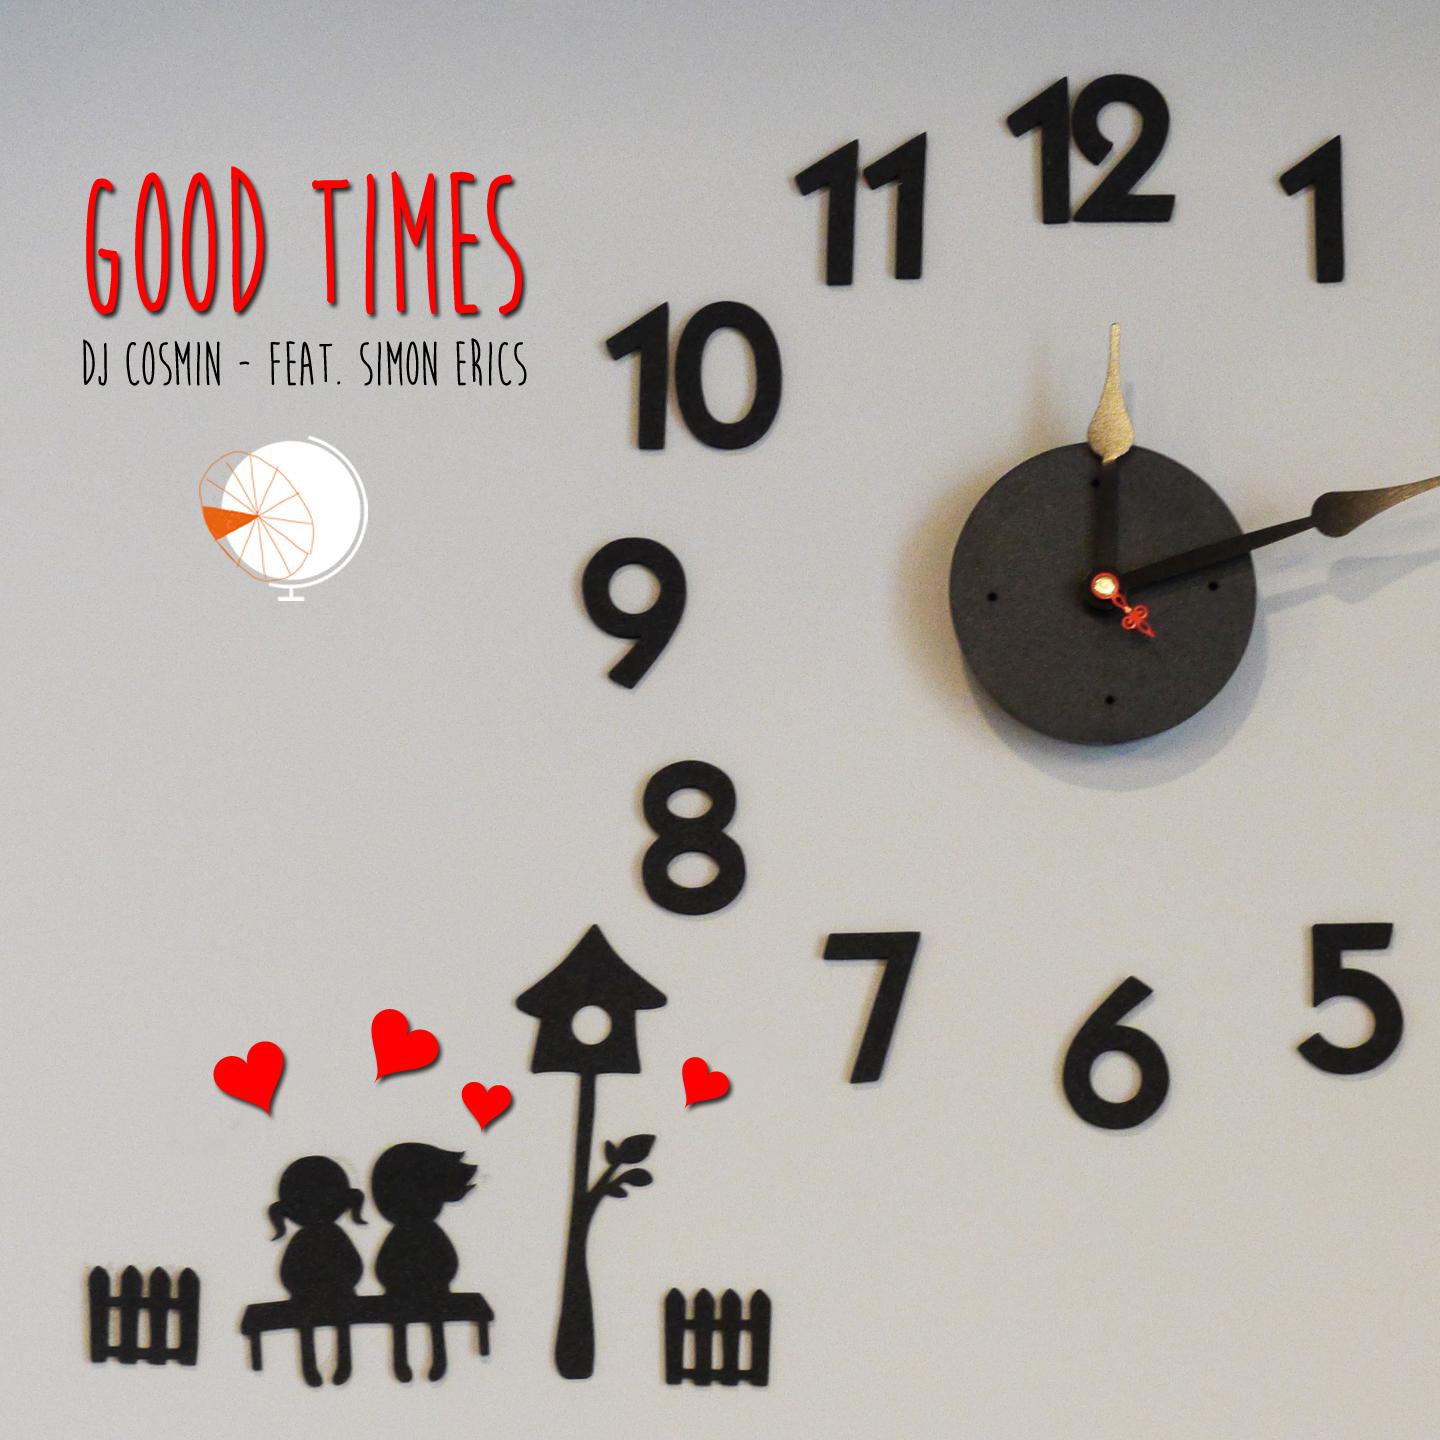 DJ Cosmin - Good Times (Radio Edit)